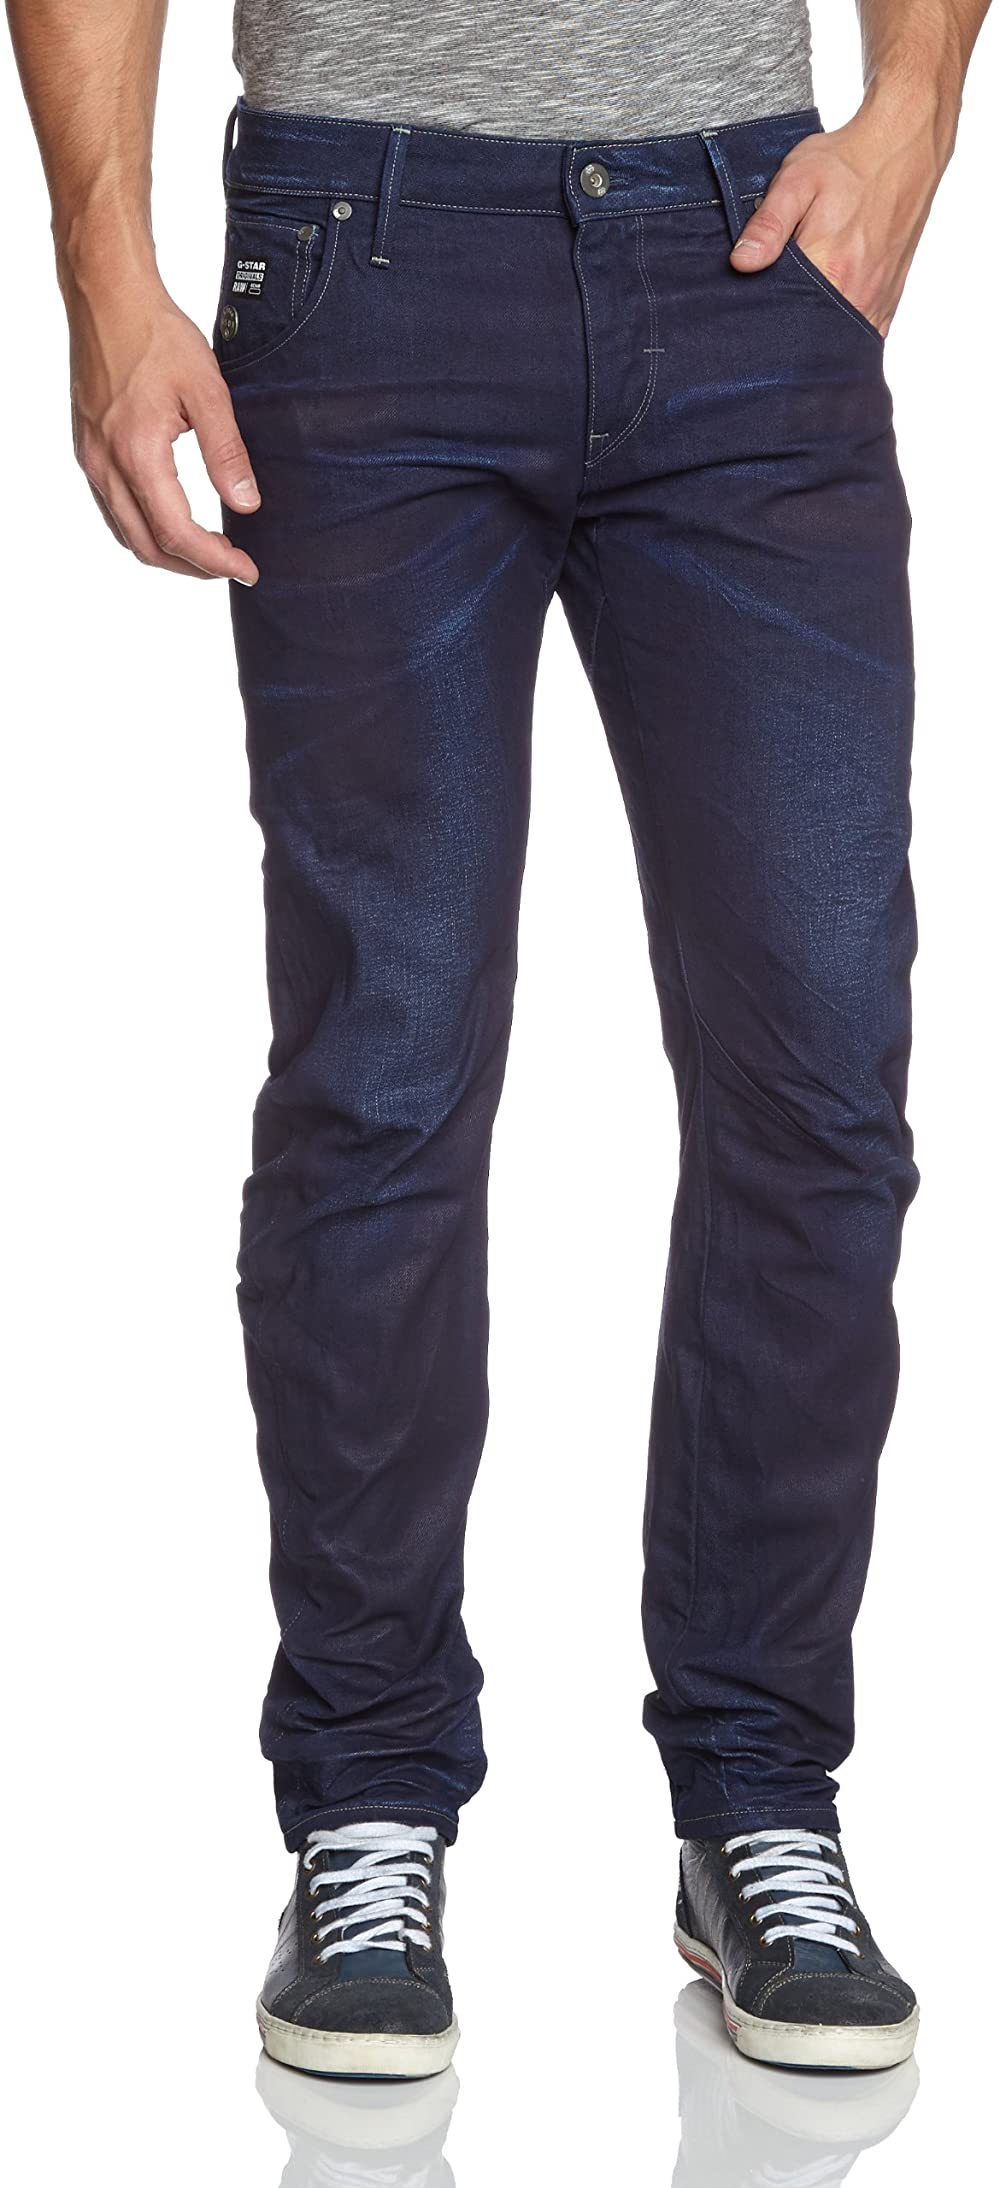 G-Star Raw Mens Arc 3D Slim Fit Jeans,Medium Aged,34W x 32L